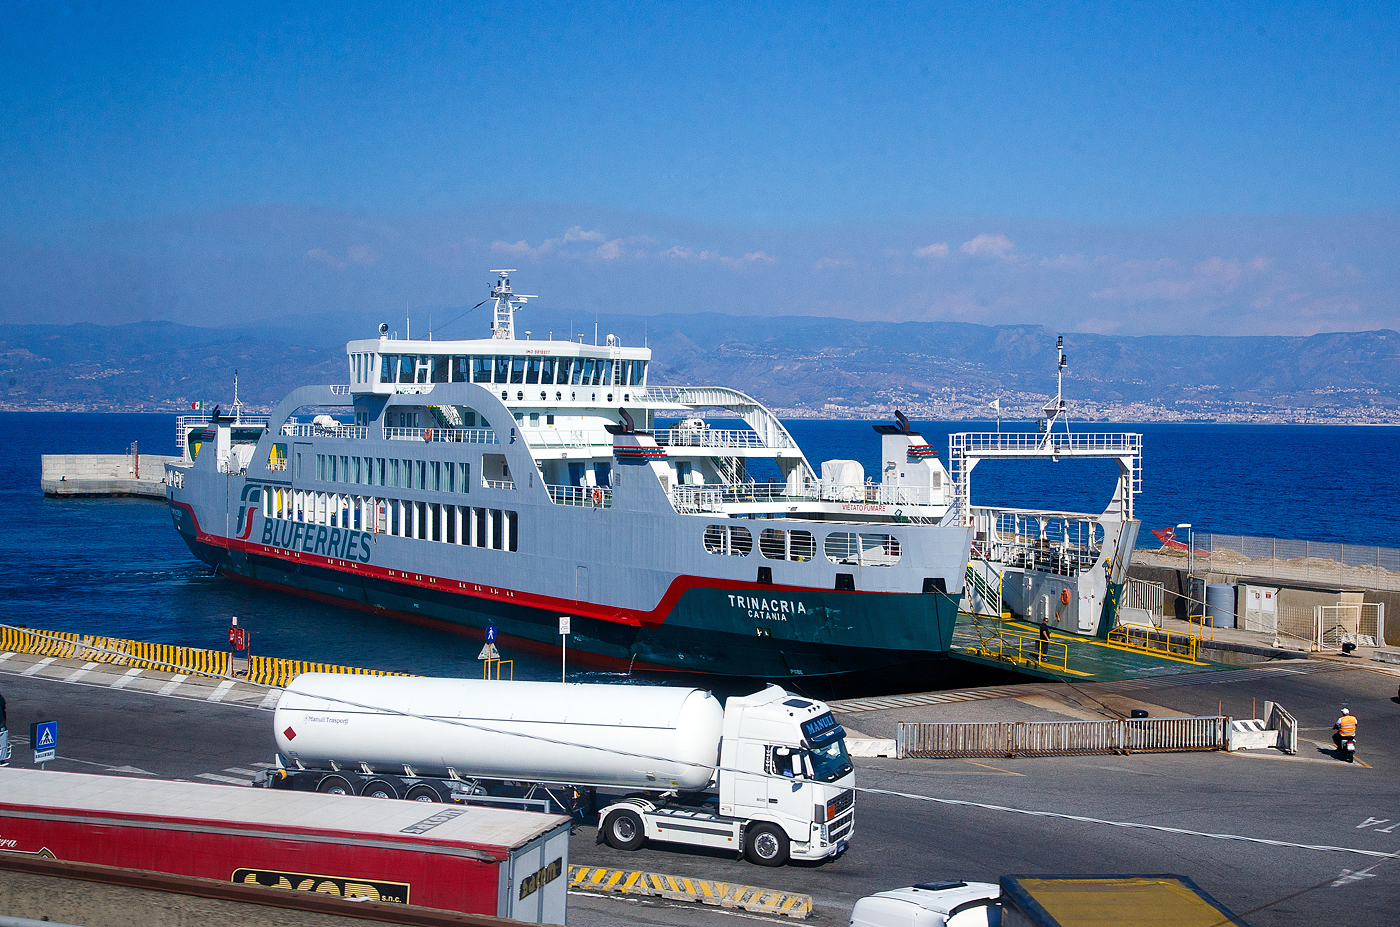 Die TRINACRIA (IMO 9818917) ein Ro-Ro Fährschiff der Bluferries (ein Unternehmen der Gruppe FS - Ferrovie dello Stato Italiane), liegt am 20.07.2022 beim Bluferries Fährterminal in Tremestieri (Messina). Diese Fähre ist ausschließlich für die Beförderung von Radfahrzeugen und Passagieren in der Straße von Messina. Sie kann keine Eisenbahnwaggons transportieren.

Die Fähre (Schiff) wurde von der griechischen Werftder Megatechnica SA in Perama (Griechenland) gebaut. Am 6. Februar 2019 wurde es offiziell in Dienst gestellt. Das Schiff wird nur für den Transport von Radfahrzeugen und Passagieren verwendet und ist mit vier um 360° drehbaren Strahlrudern ausgestattet, die ihm eine große Manövrierfähigkeit ermöglichen.

TECHNISCHE DATEN:
Vermessung (Bruttoraumzahl): 2.400 BRT
Länge: 97 m
Breite: 18 m
Antrieb: 4 x Z-Antrieb VZ 900-CR
Geschwindigkeit: 16 Knoten (29,63 km/h)
Ladekapazität: 150 Pkw (alternativ 23 Lkw)
Zugelassene Passagierzahl: 400
